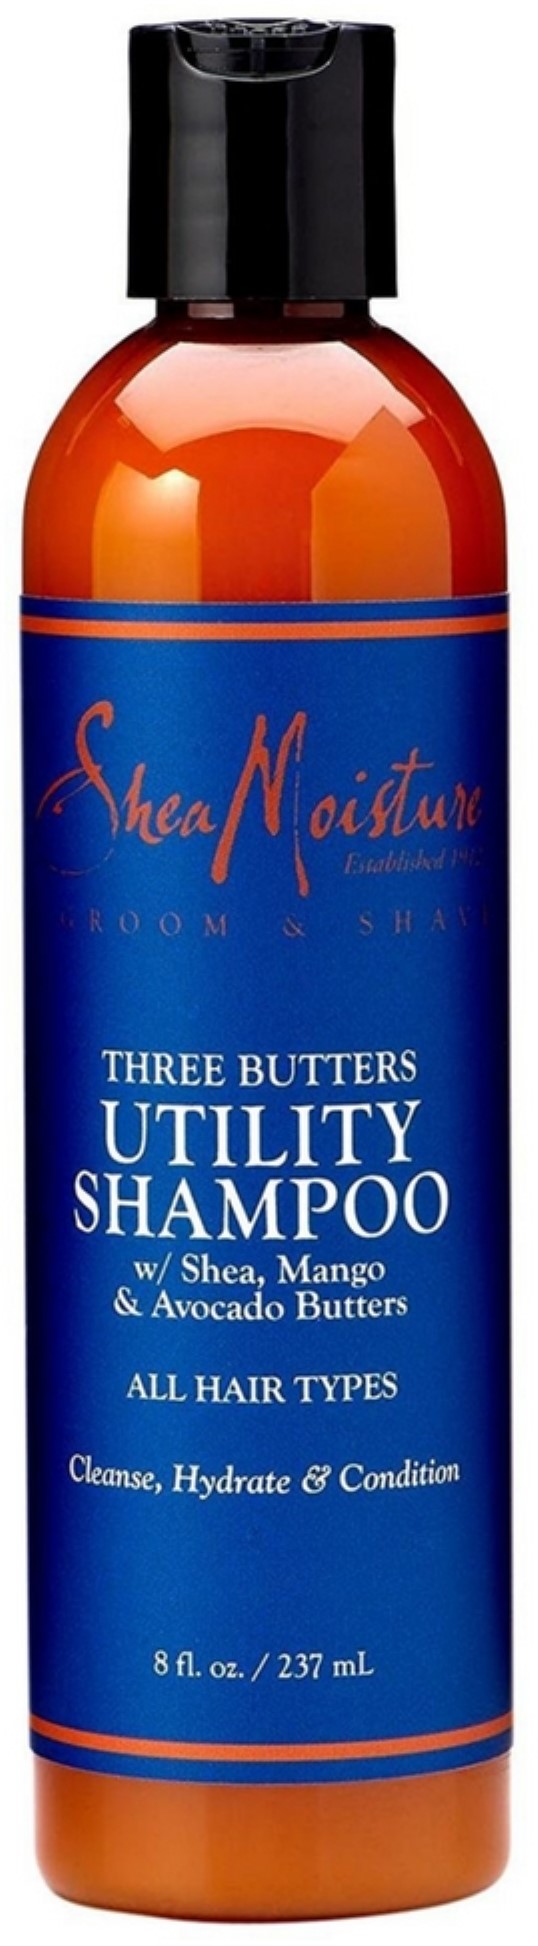 Shea Moisture Three Butters Utility Shampoo 8 oz (Pack of 2)